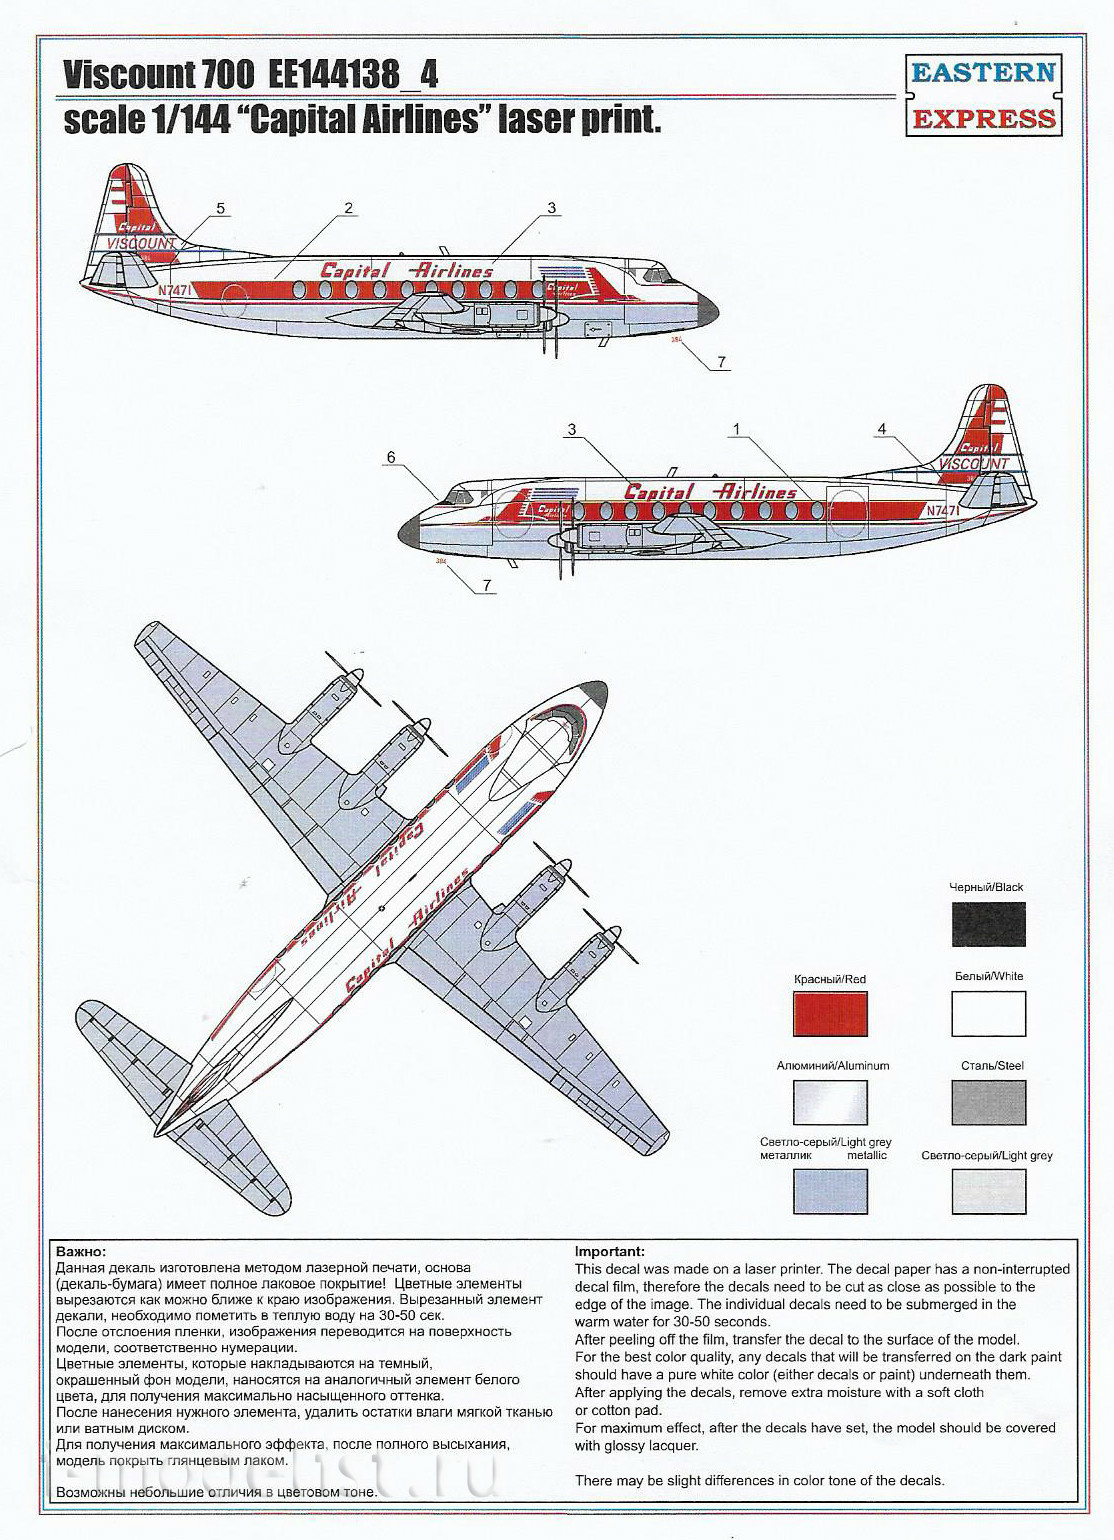 144138-4 Восточный экспресс 1/144 Гражданский авиалайнер Viscount 700 Capital Air